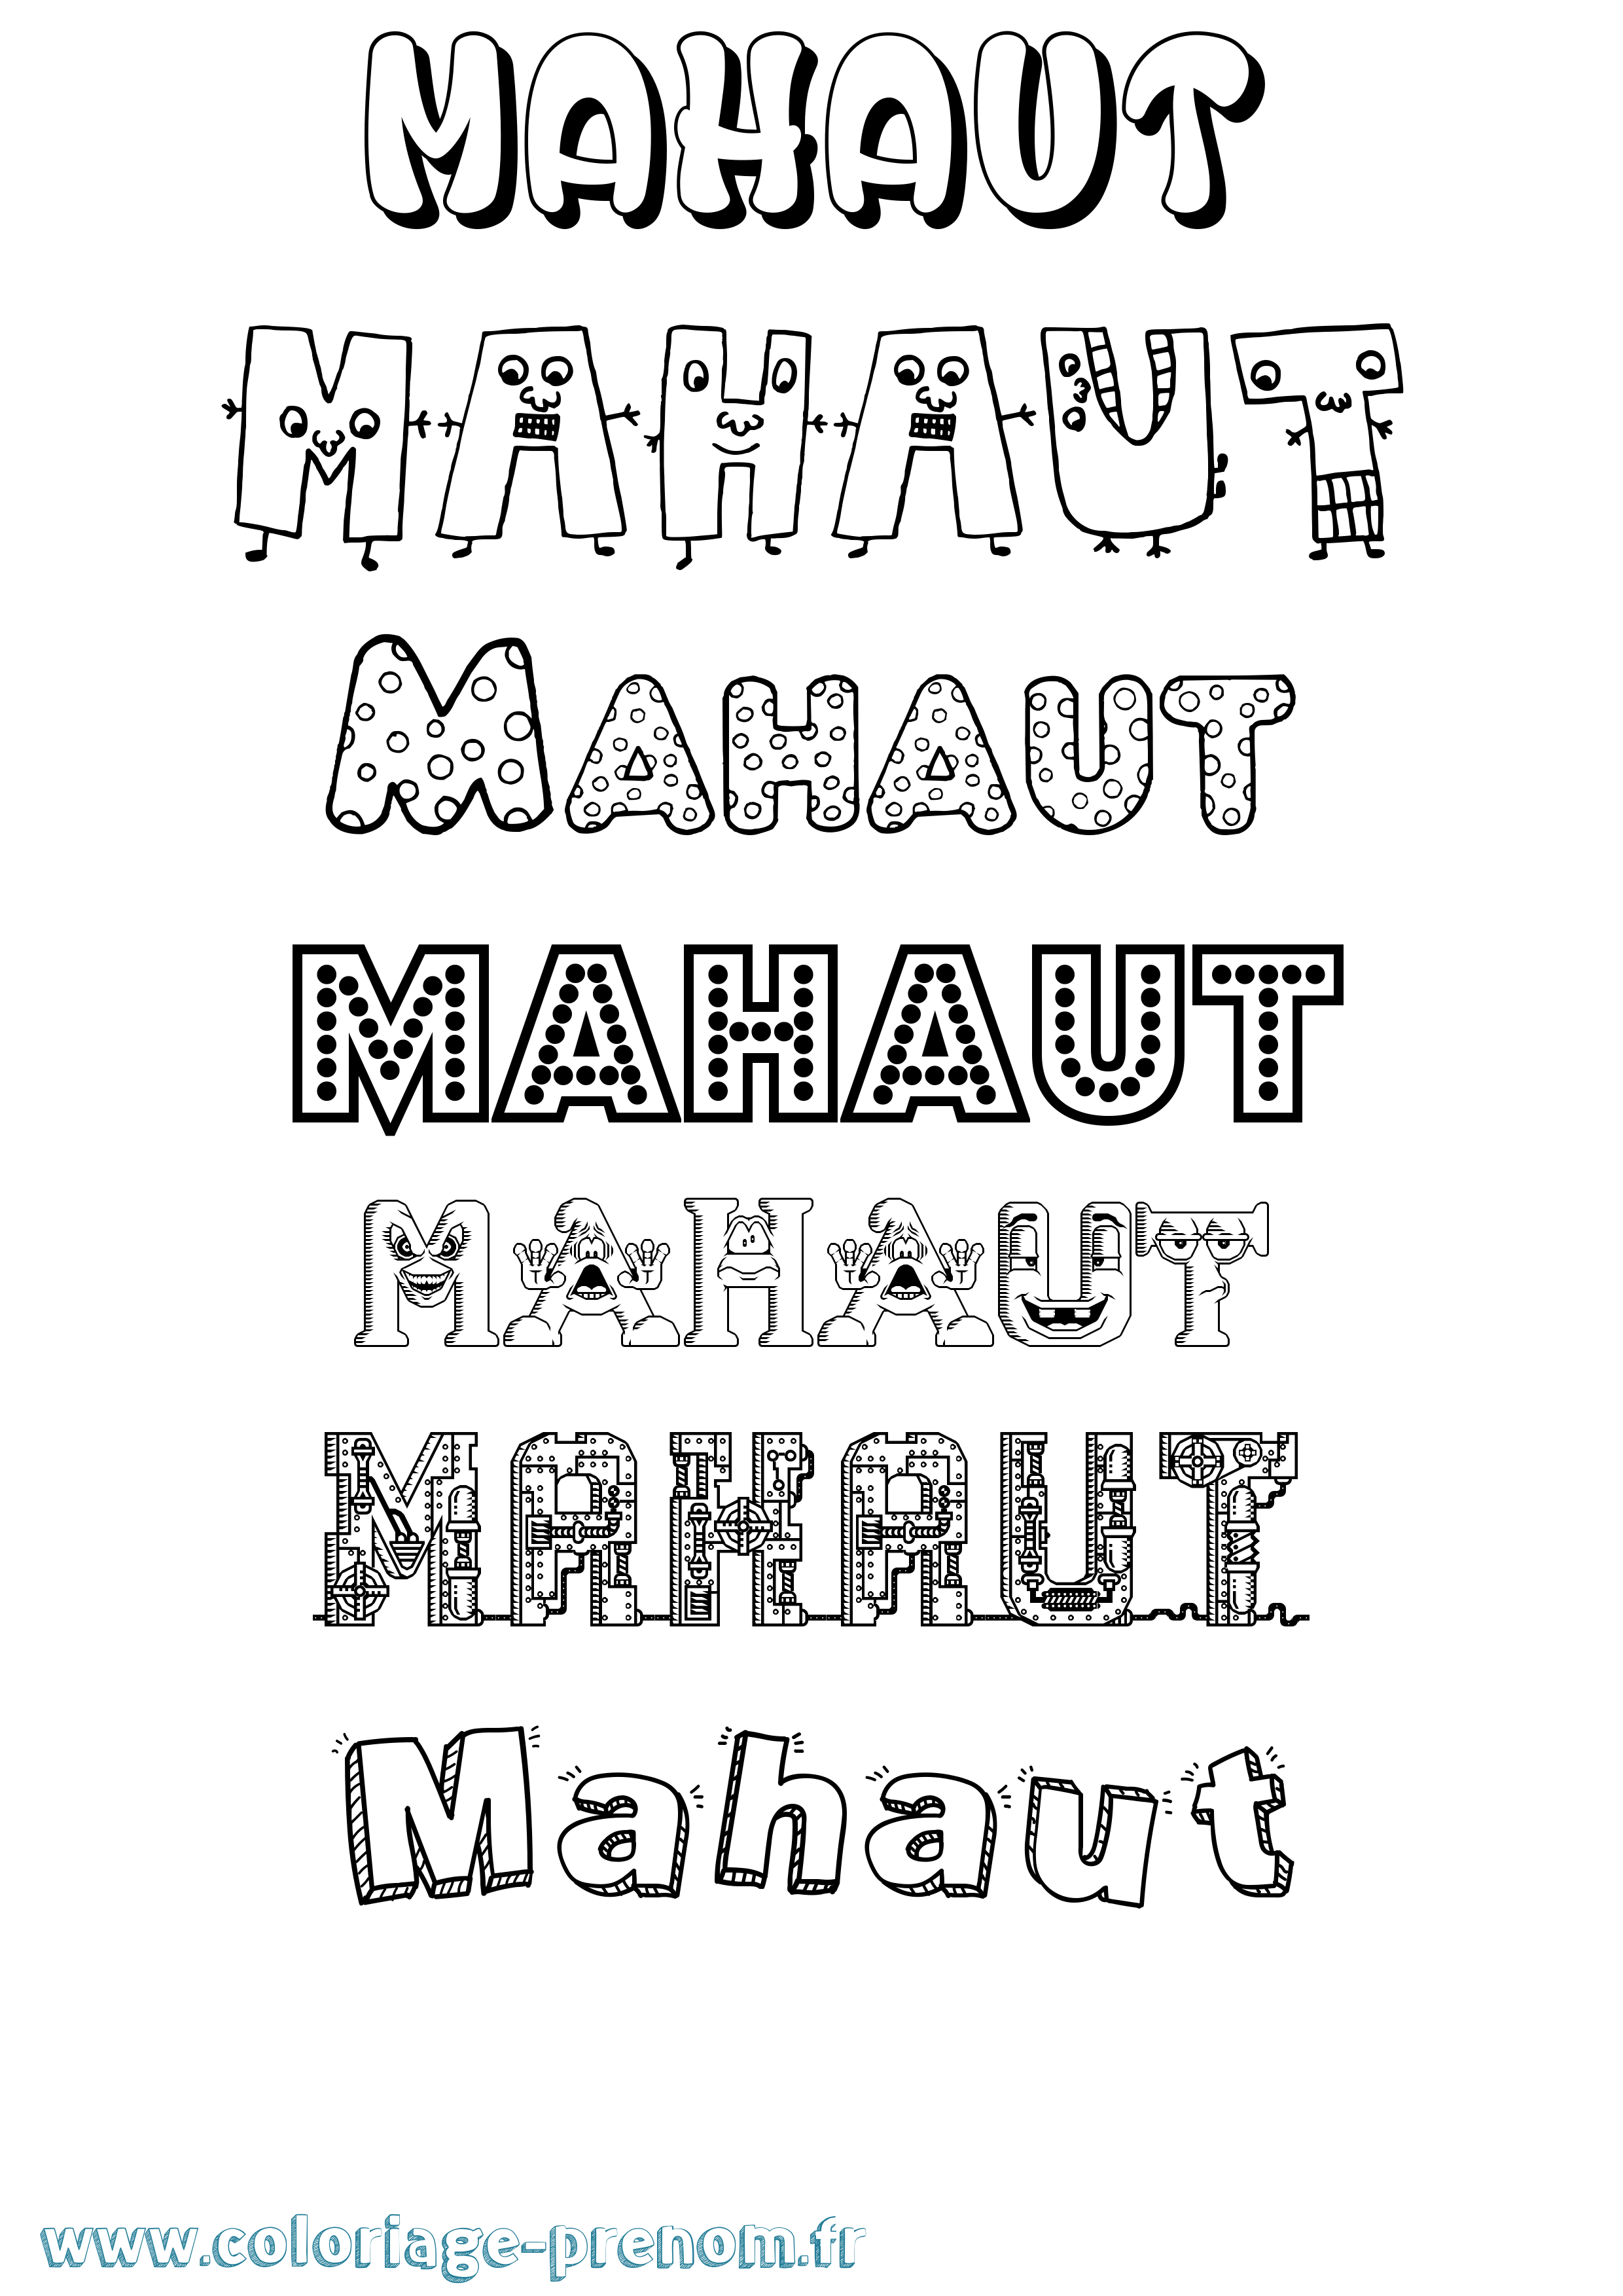 Coloriage prénom Mahaut